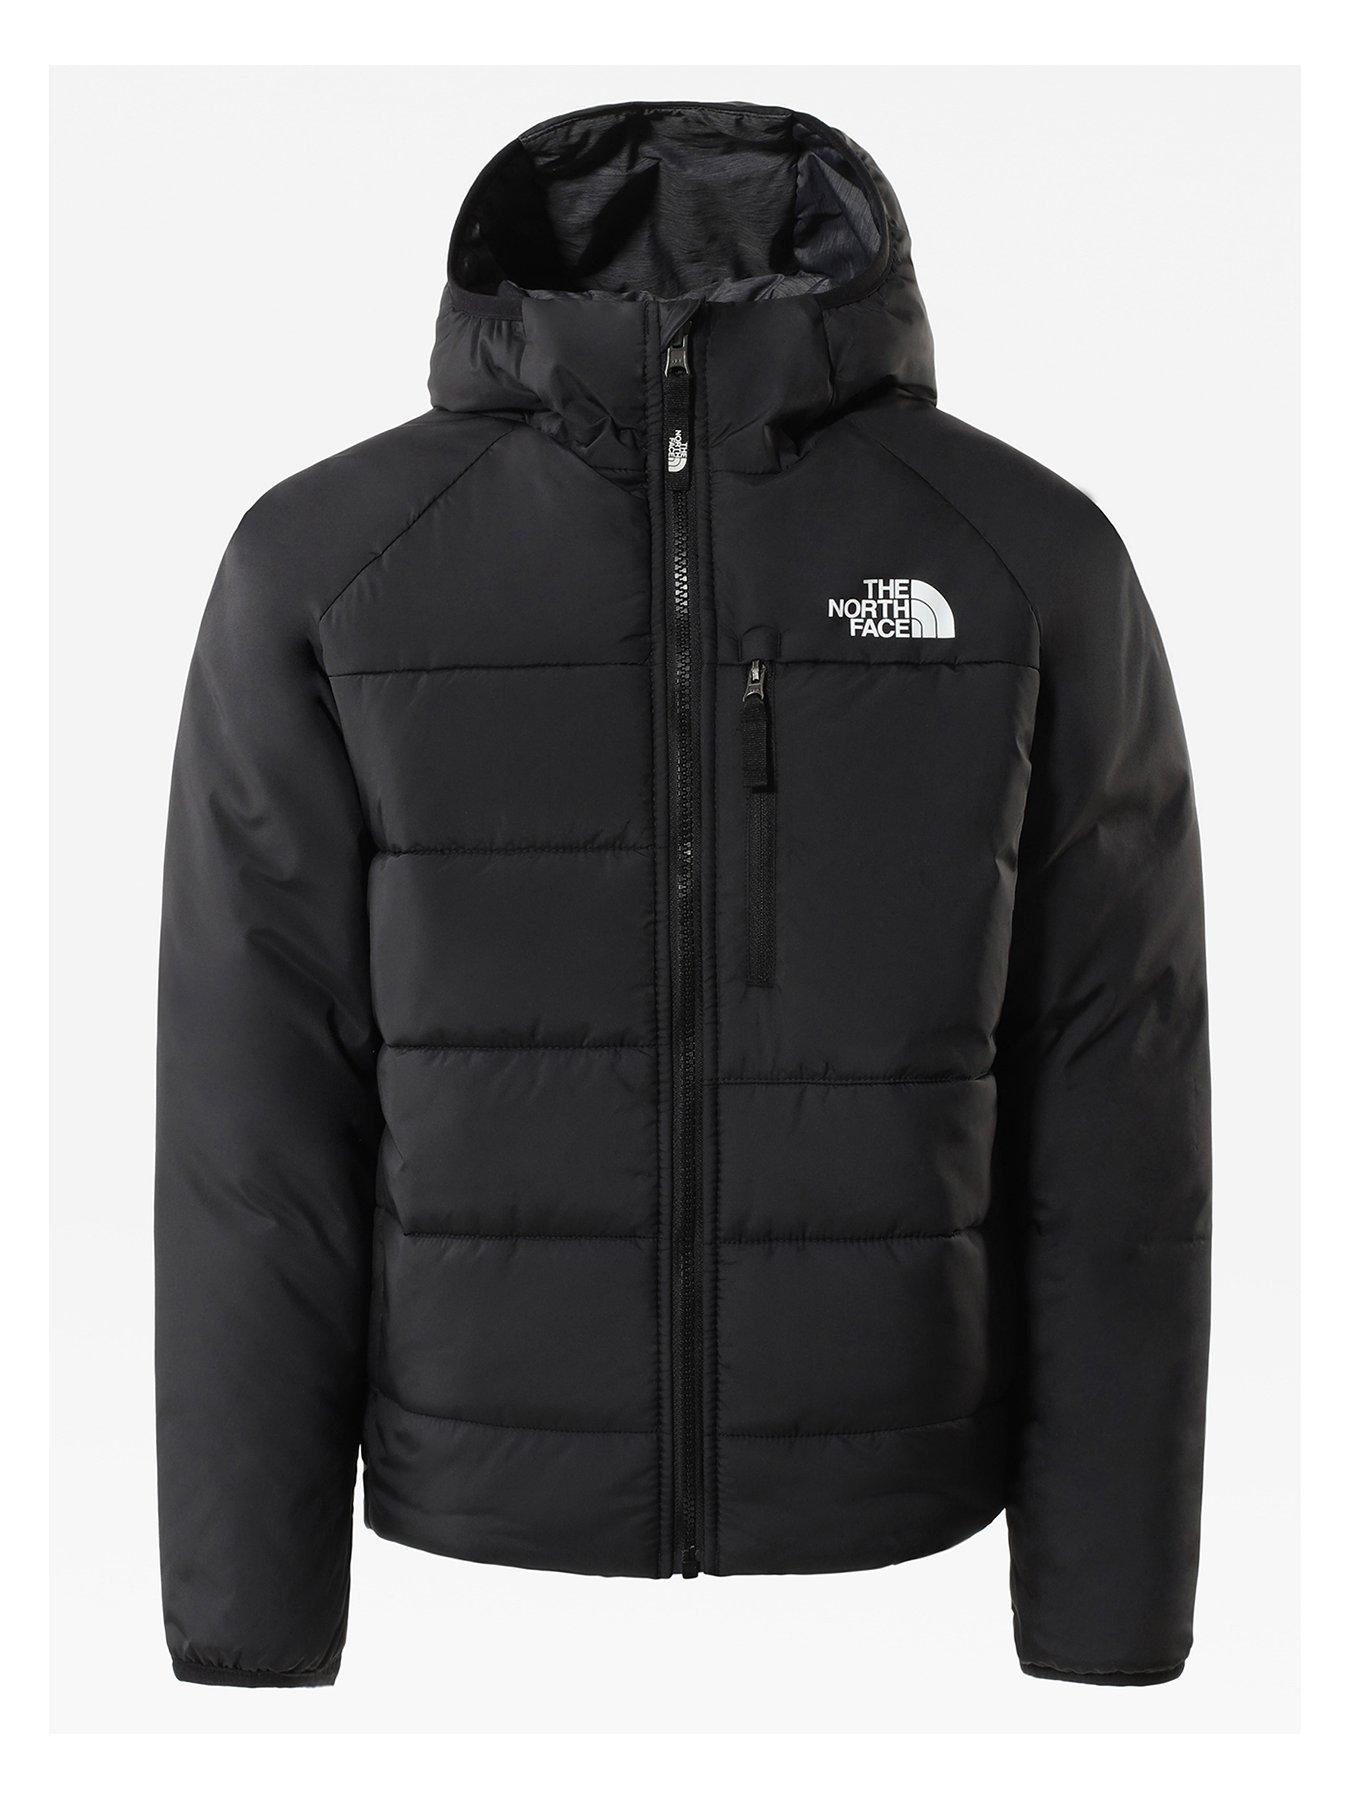 Domyos light jacket KIDS FASHION Jackets Sports Gray discount 94% 